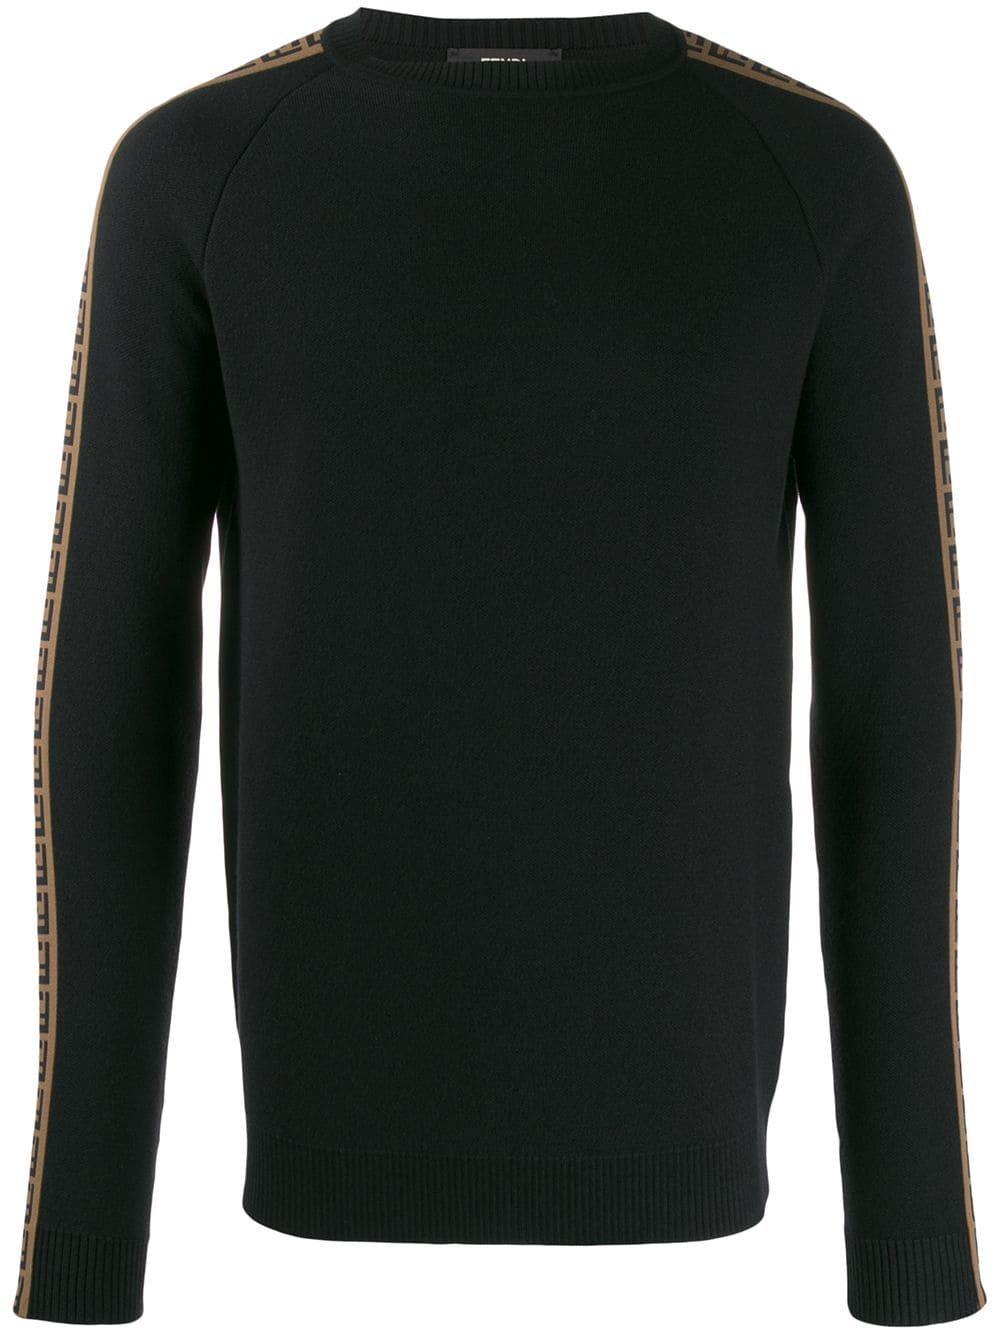 Fendi Wool Sweater in Black for Men - Lyst